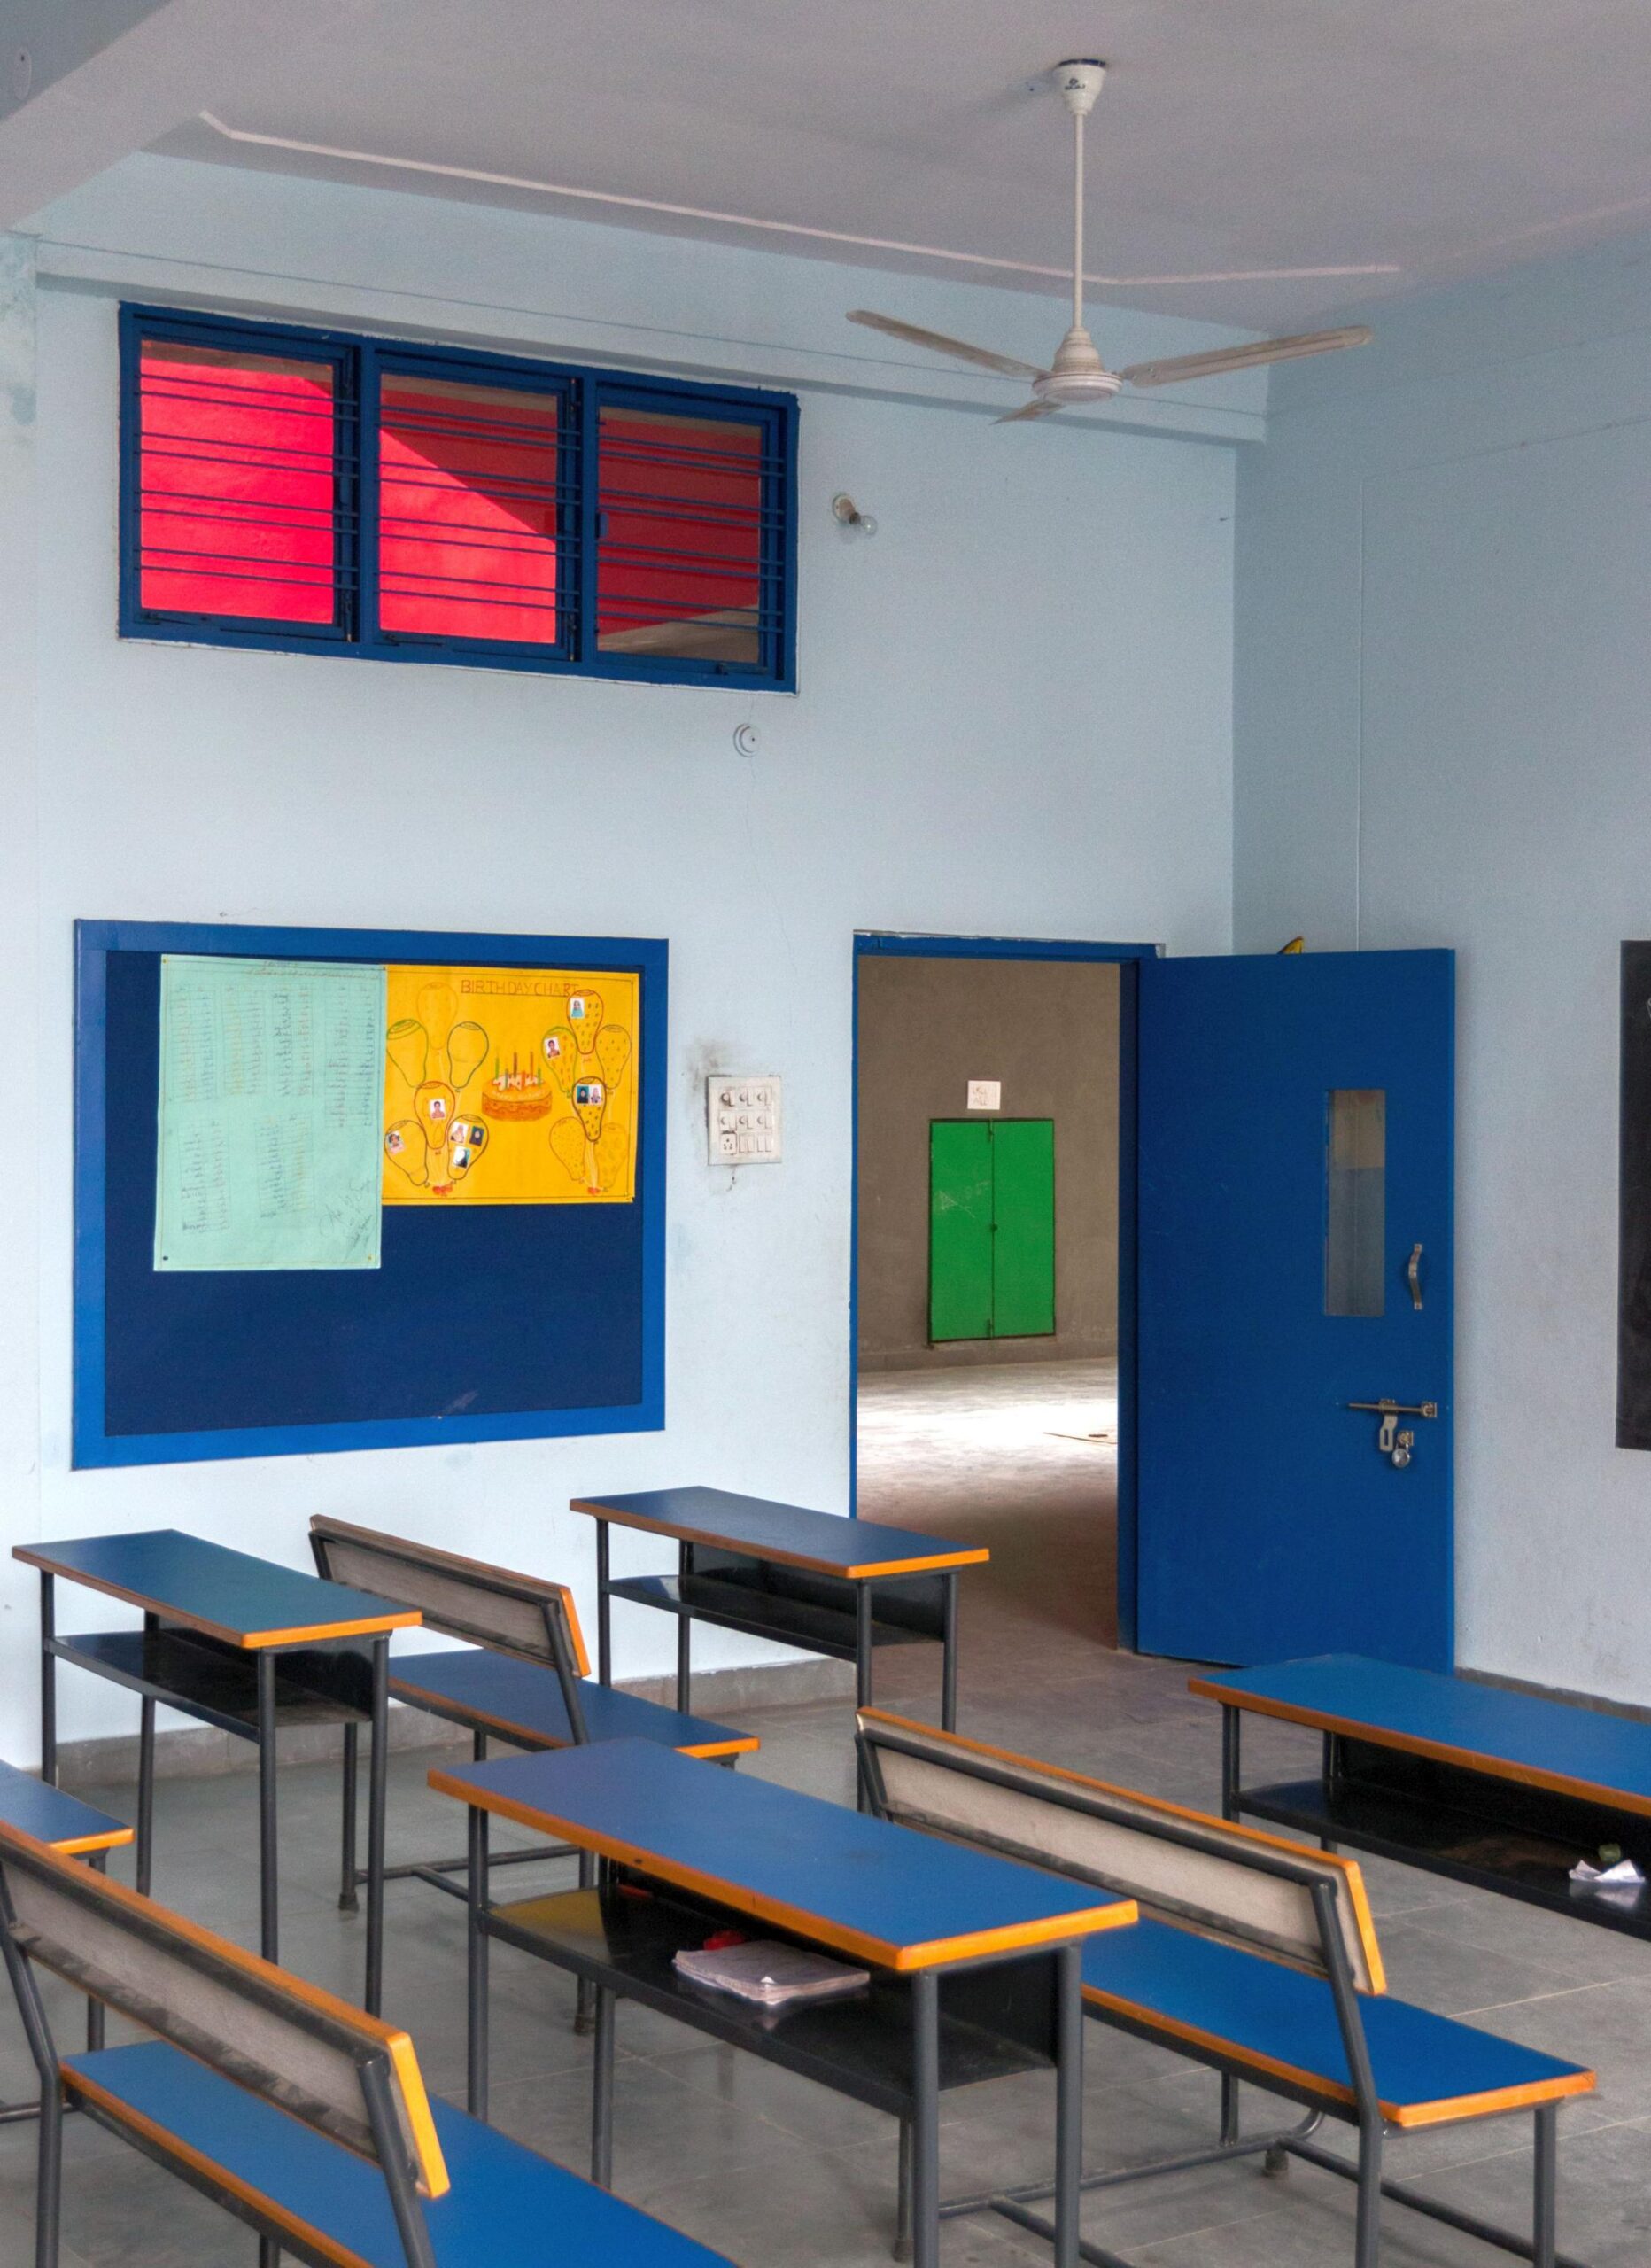 Hilltop School (Bright Horizon Academy) in Golconda, Hyderabad by DesignAware 31